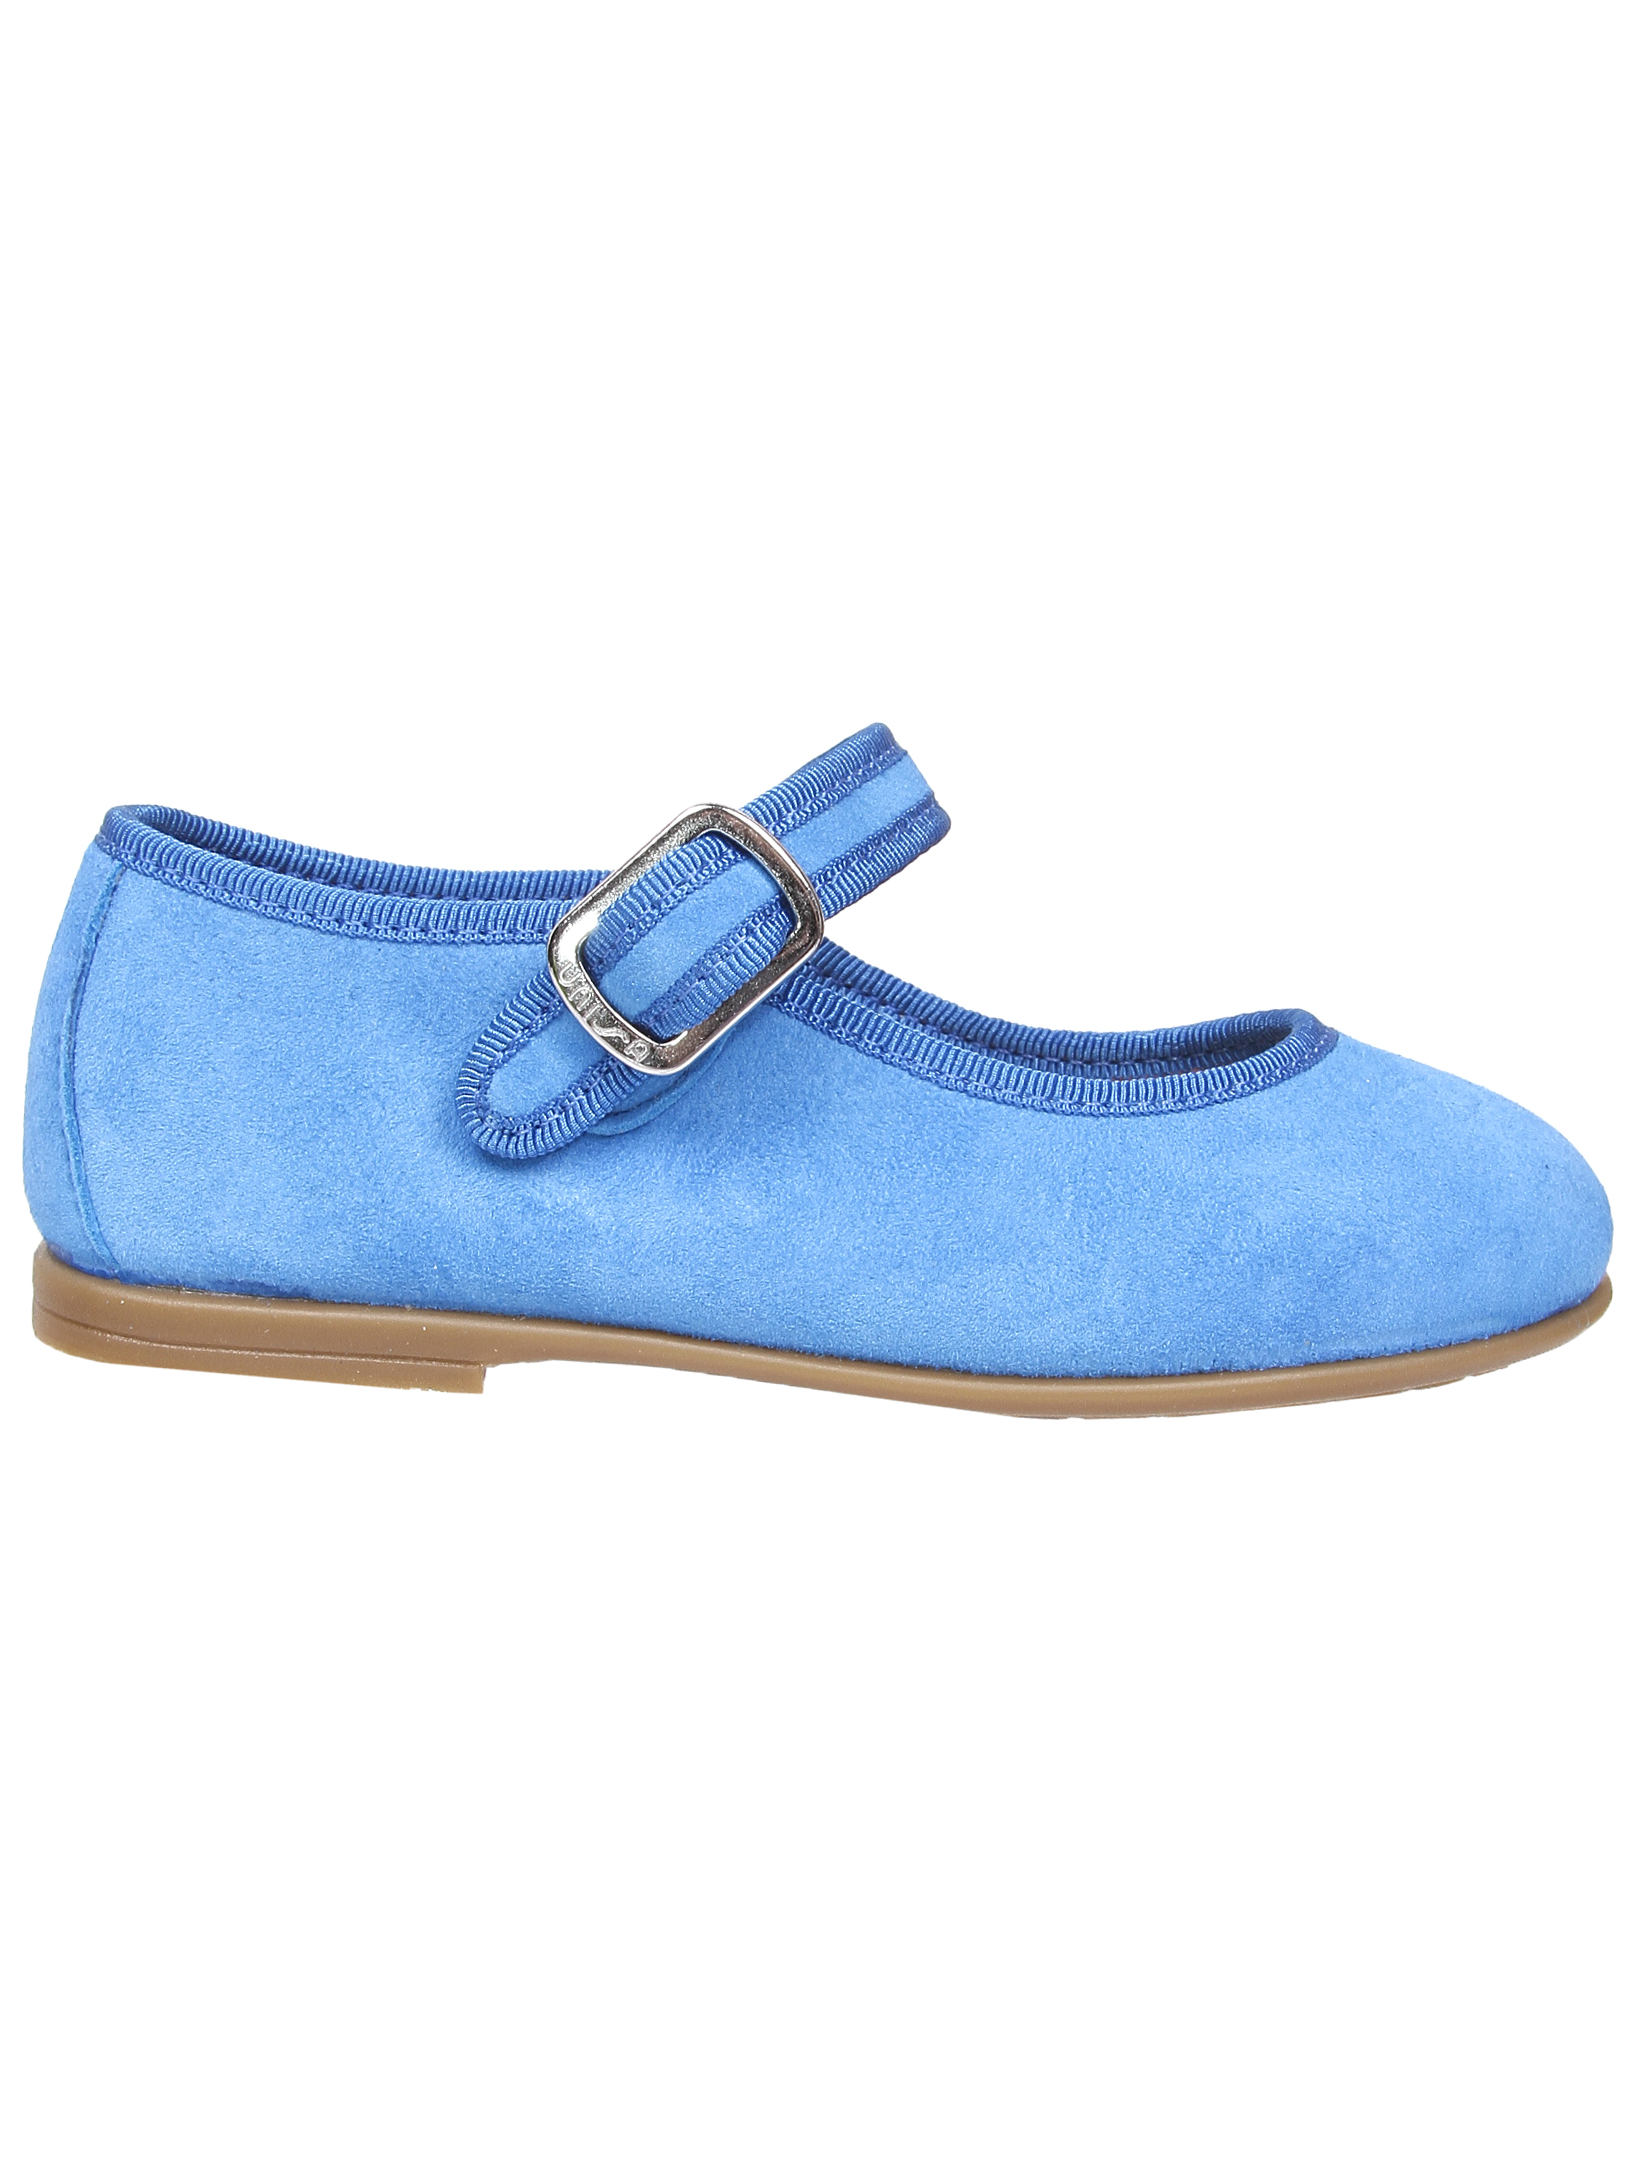 Туфли UNISA 1952860, цвет голубой, размер 35 2011509970013 - фото 3